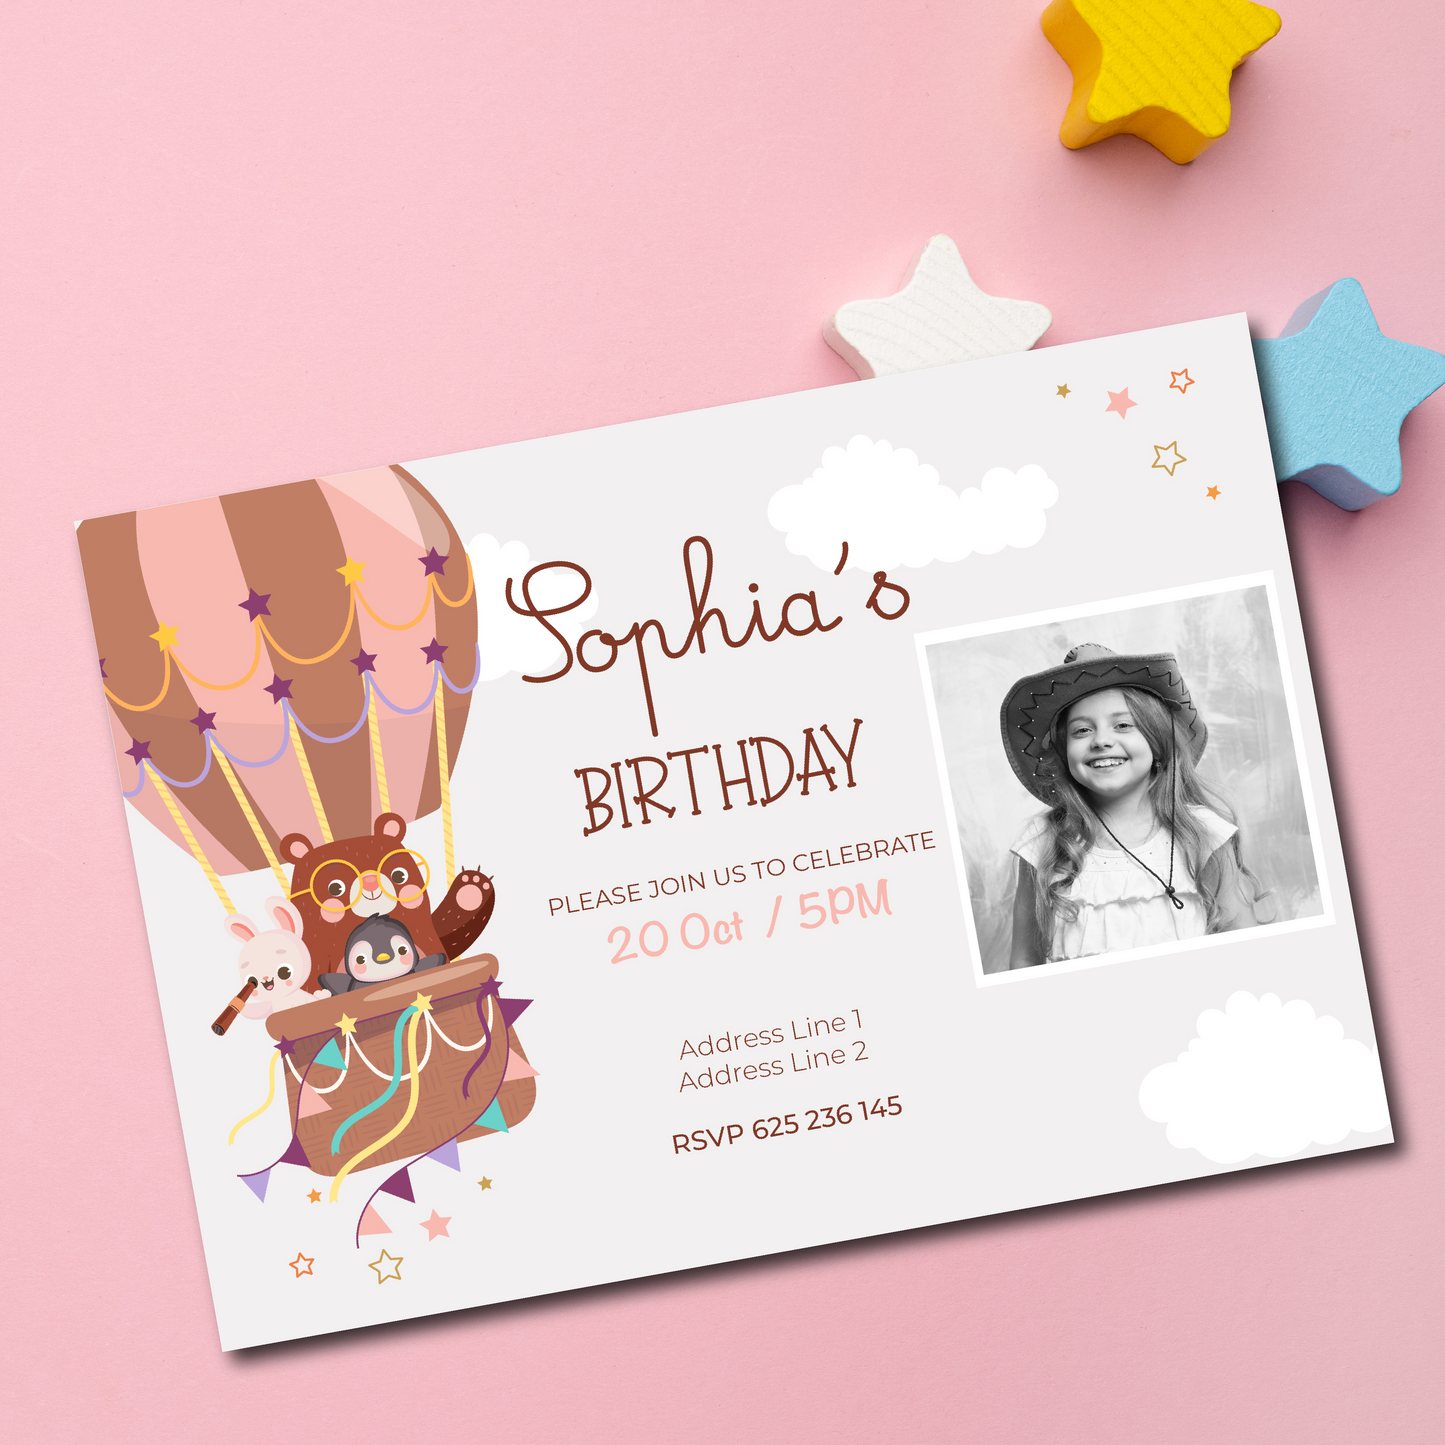 birthday invitation, kids birthday party invitation, kids birthday invitation printed, kids birthday invitation with photo, birthday invitation